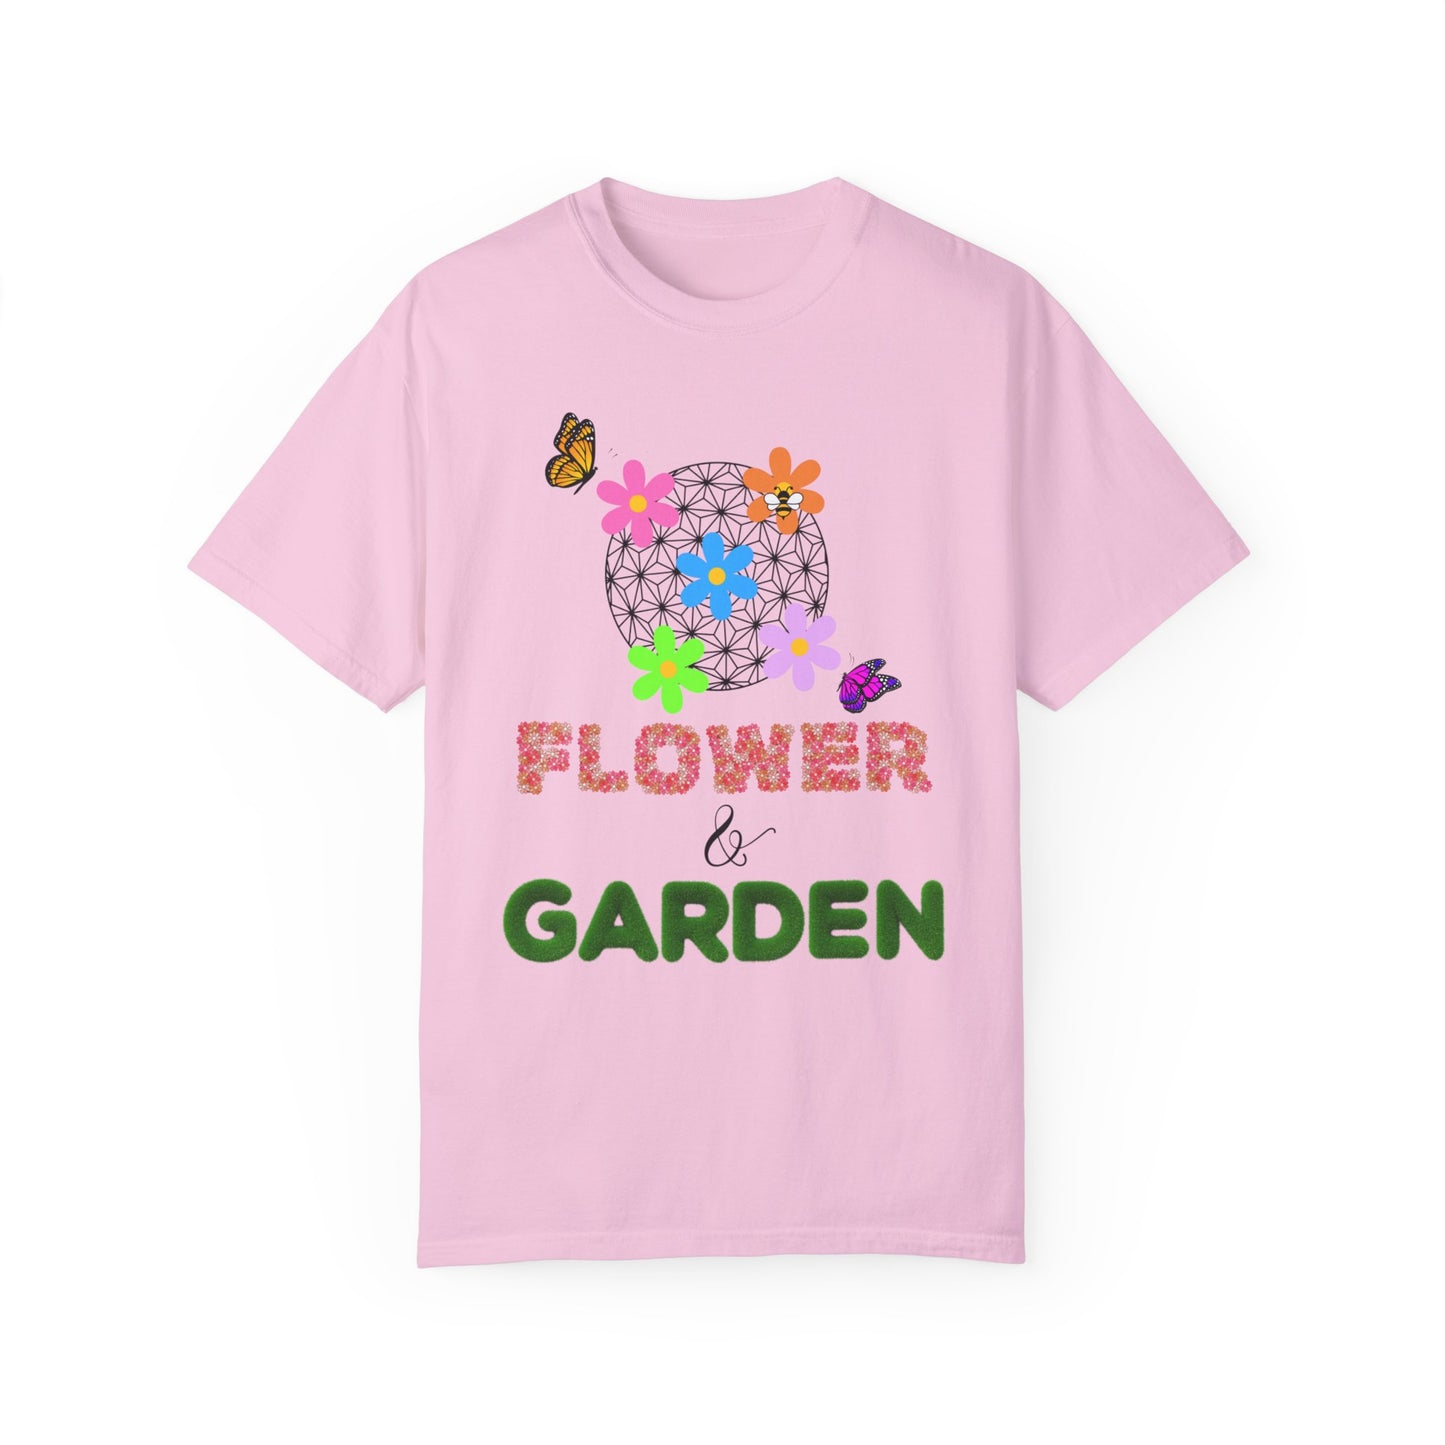 Flower and Garden {Comfort Colors Tee}